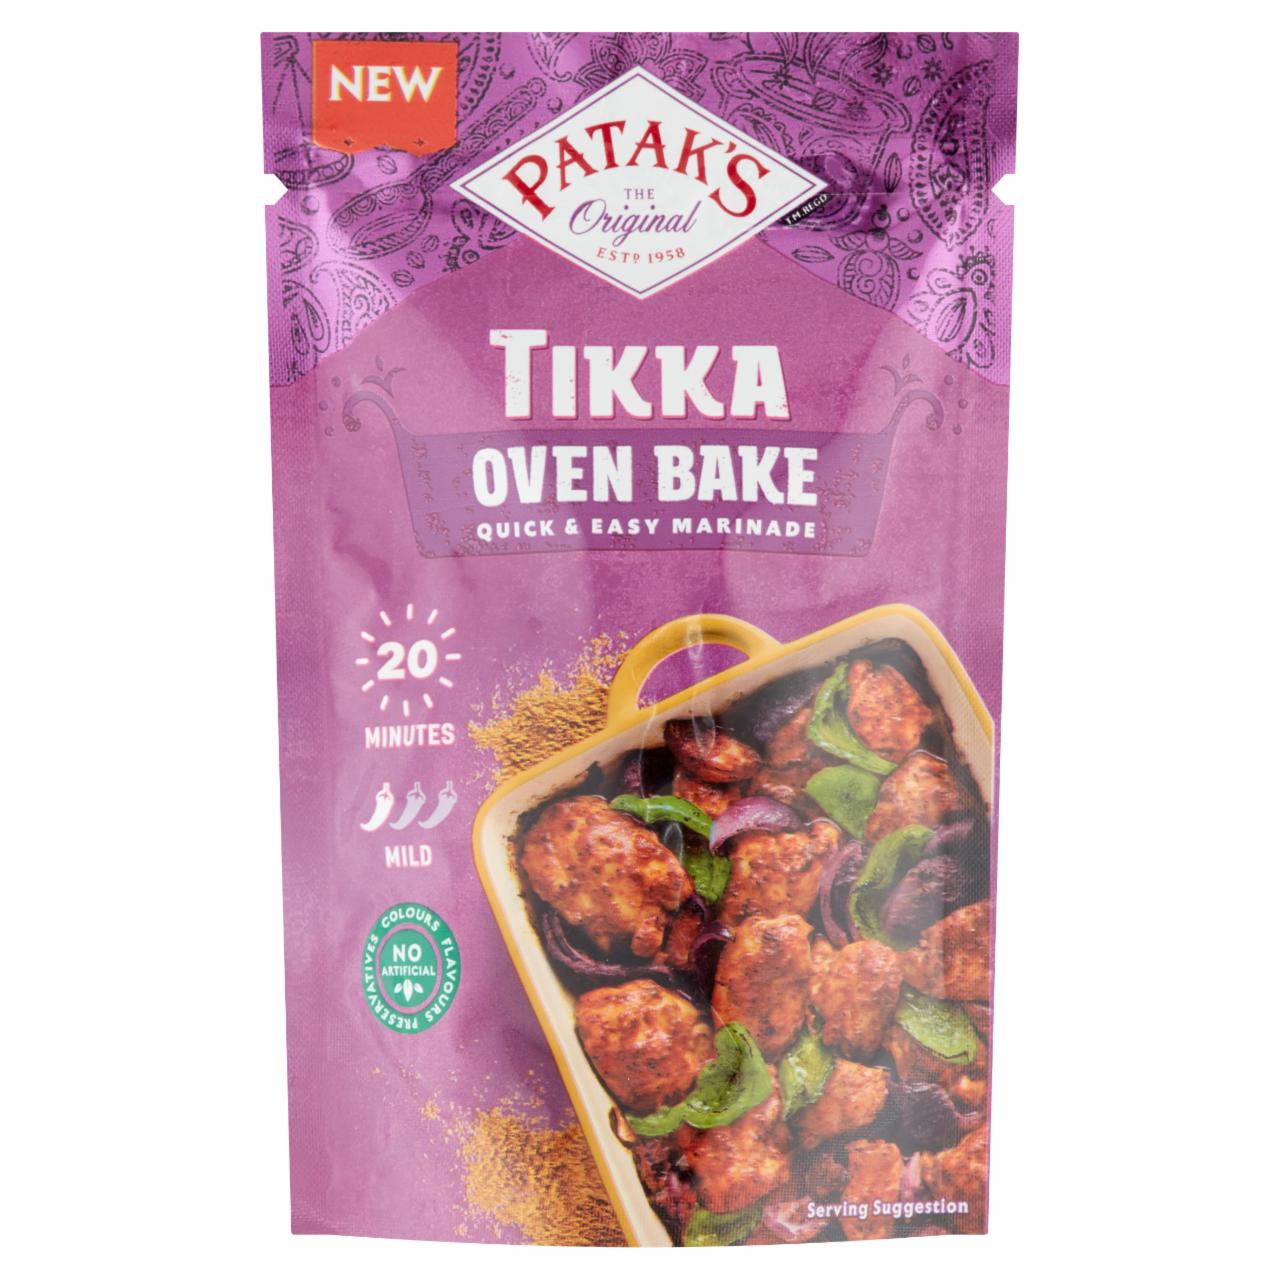 Képek - Patak's Tikka fűszerpaszta tepsiben sült ételekhez 120 g